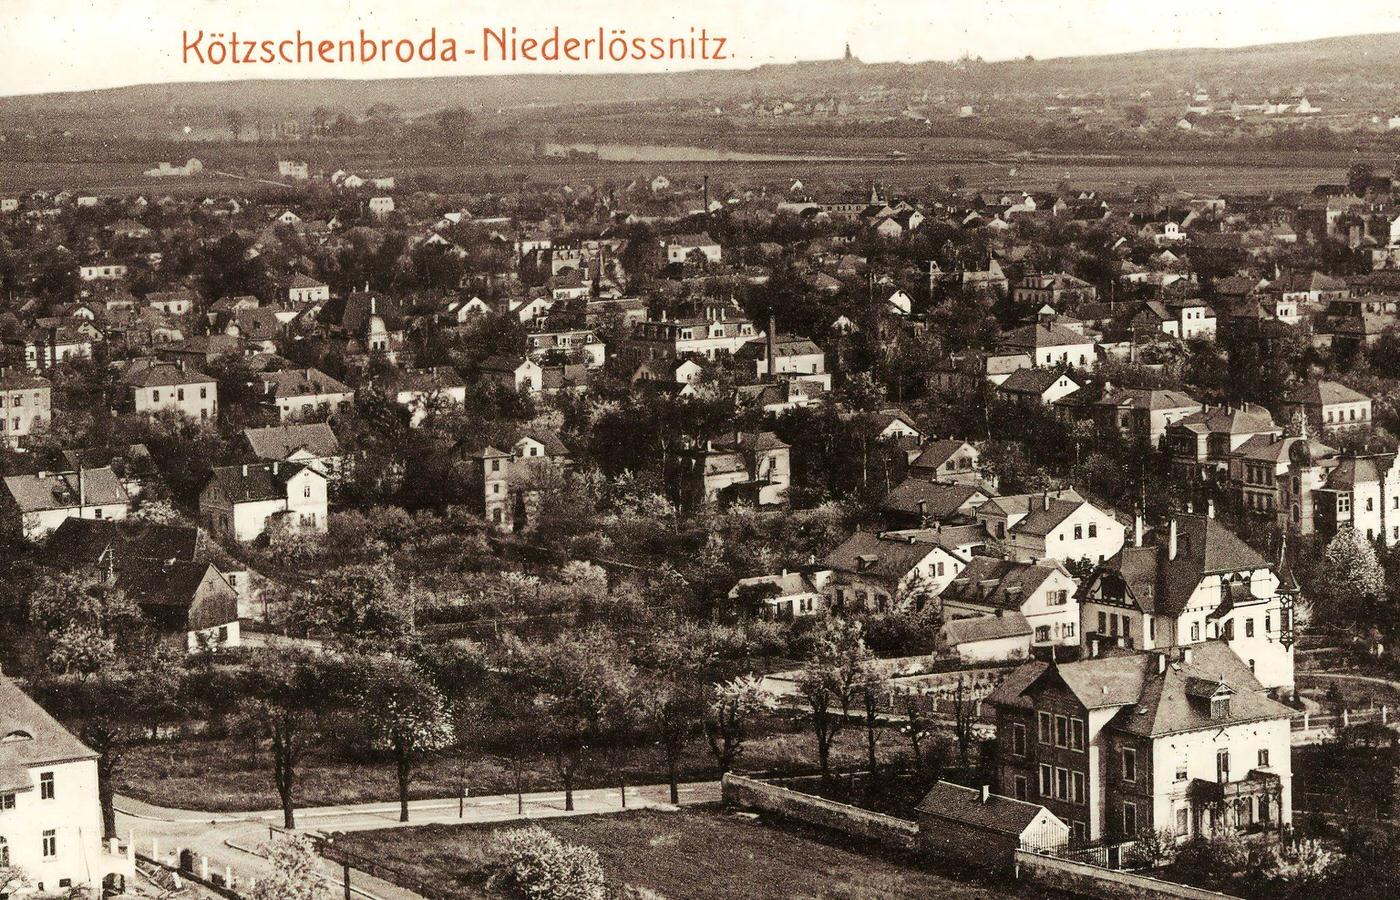 Buildings in Radebeul, Elbe, Friedenskirche, Landkreis Meissen, Germany, 1903.